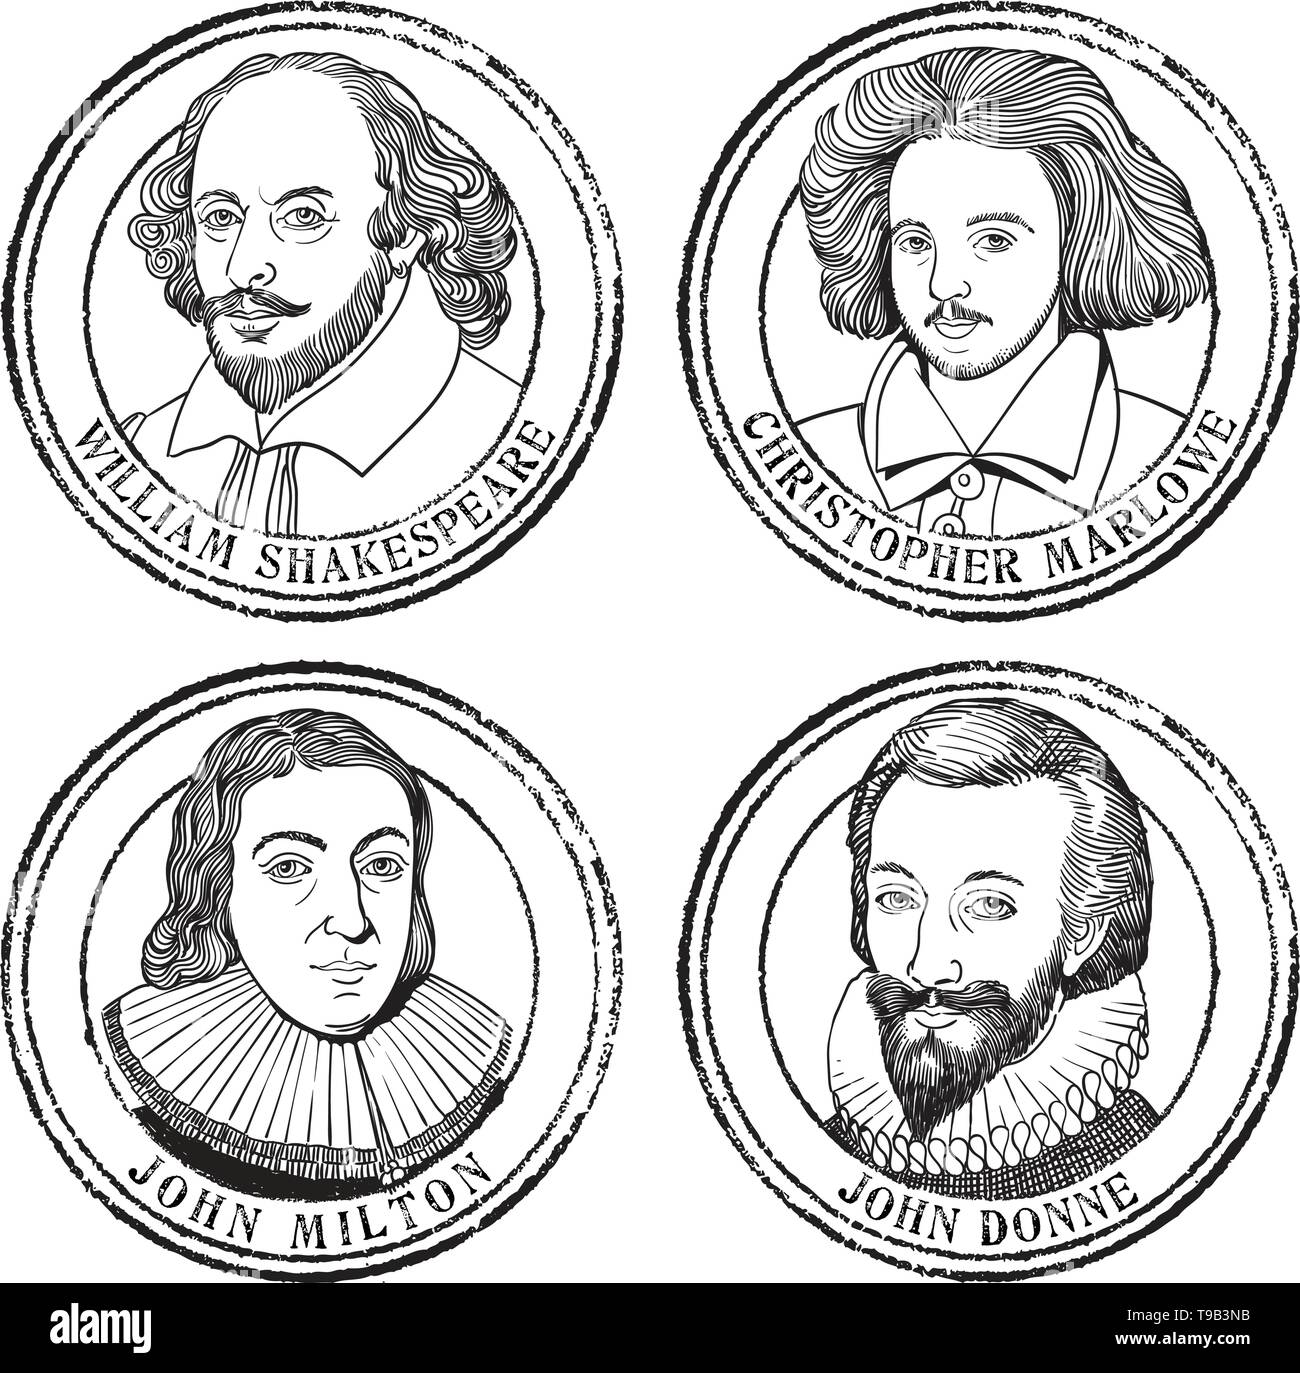 Portrait Illustration Stempel in Linie kunst von William Shakespeare, John Milton, Christopher Marlowe und John Donne. Stock Vektor